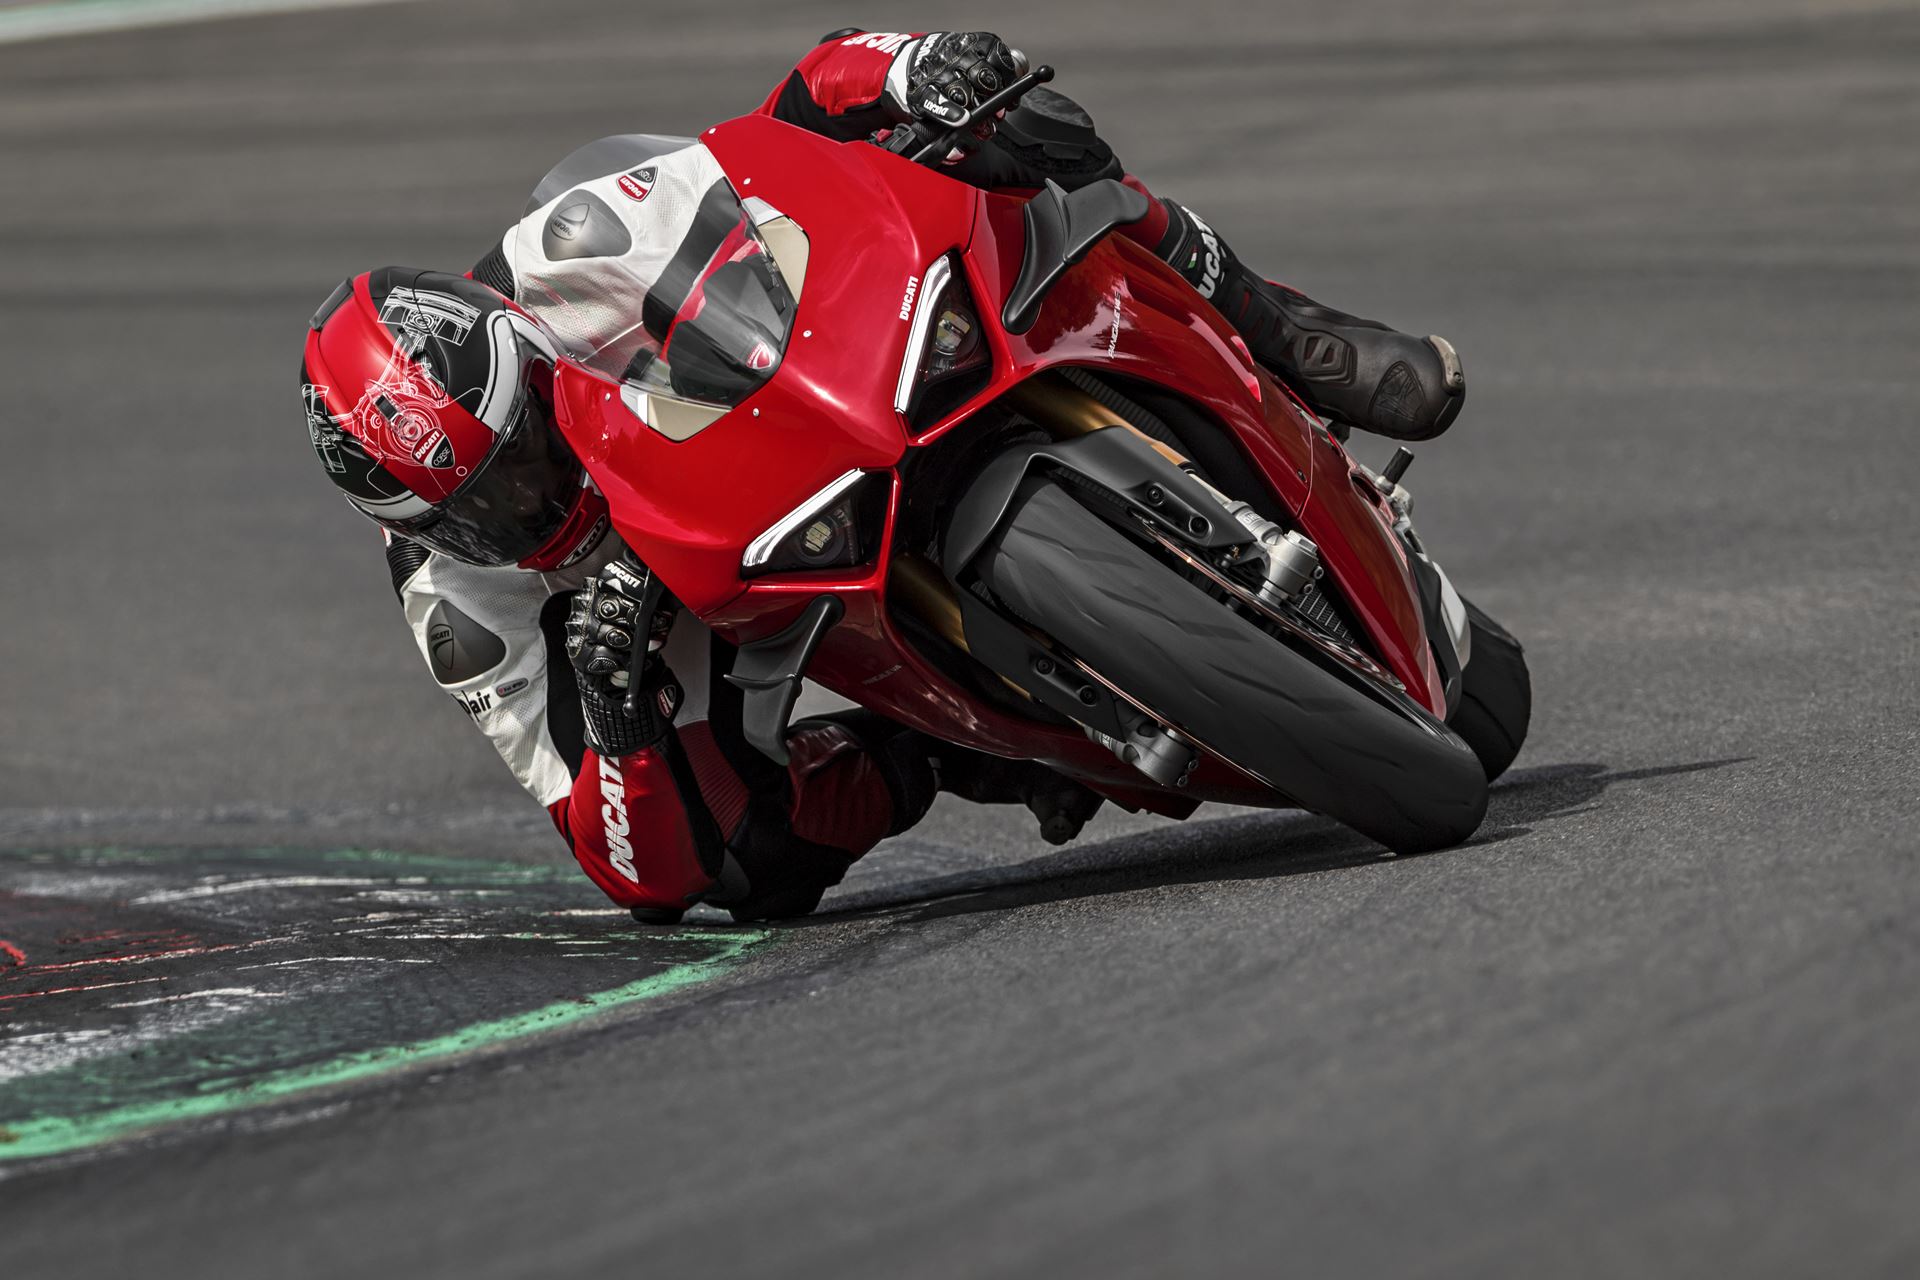 Ducati Panigale V4 S quase de série vence corrida em Itália! - Desporto -  Andar de Moto